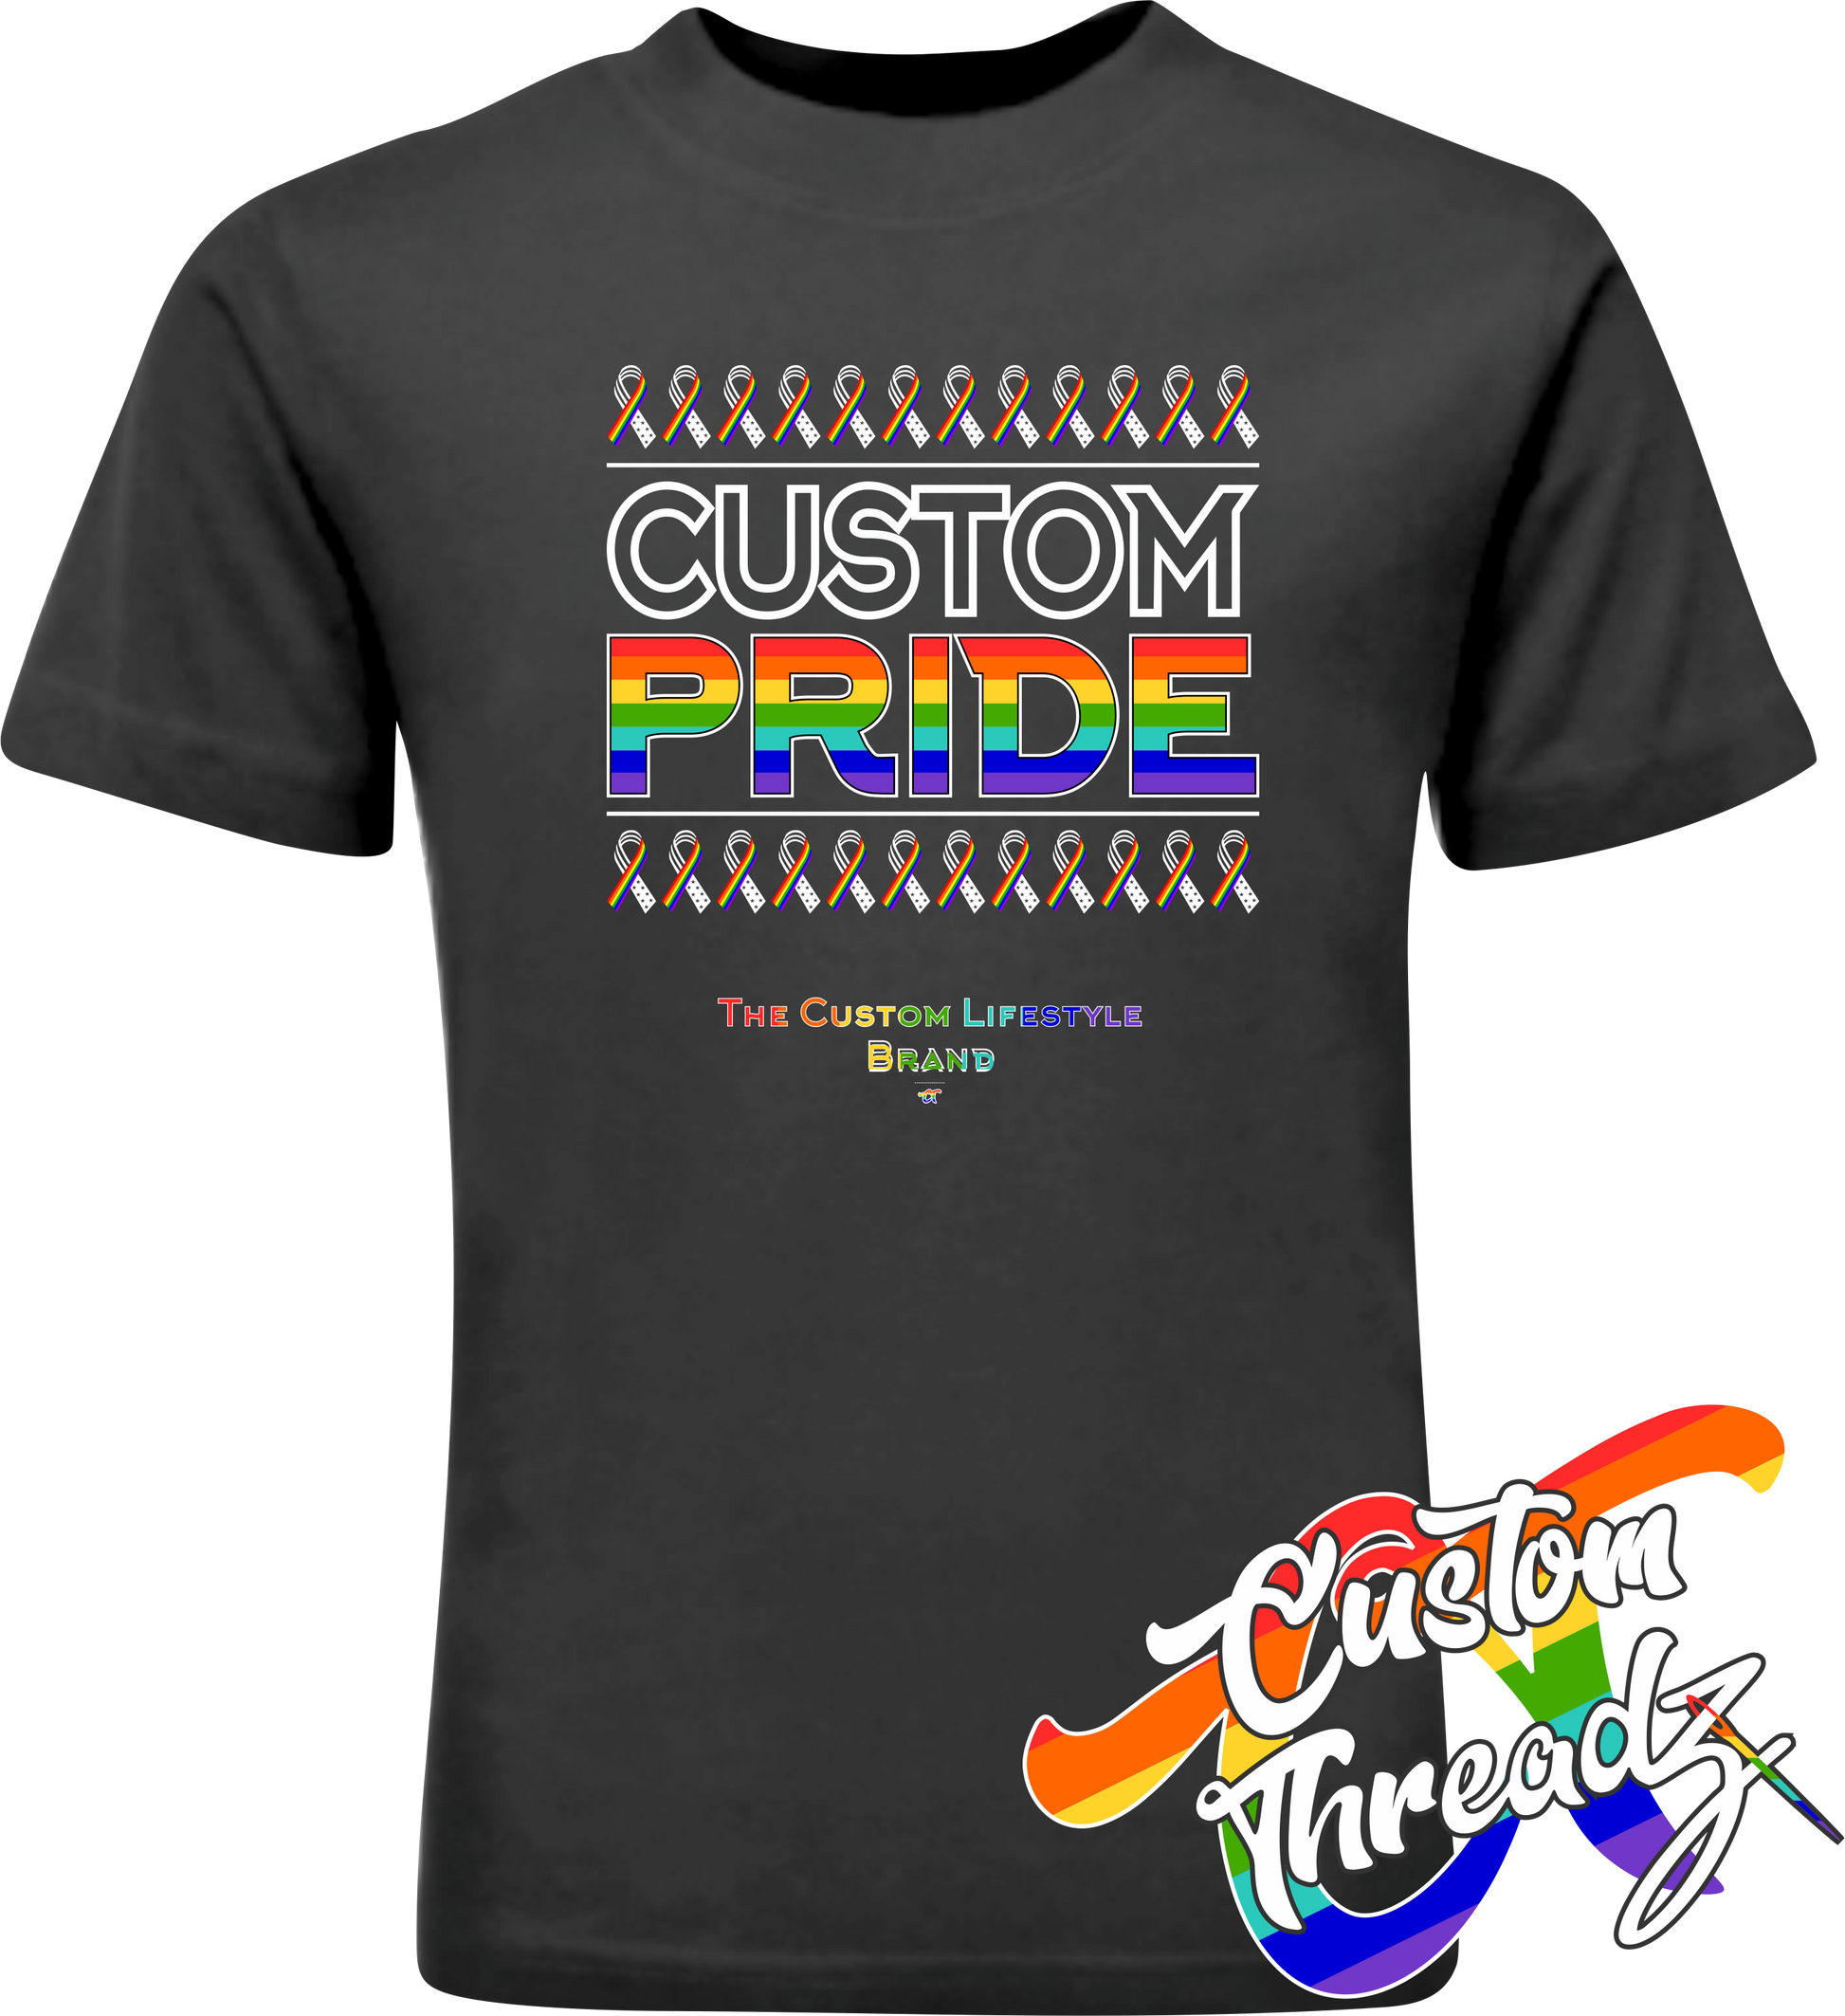 black tee with custom pride rainbow pride flag DTG printed design